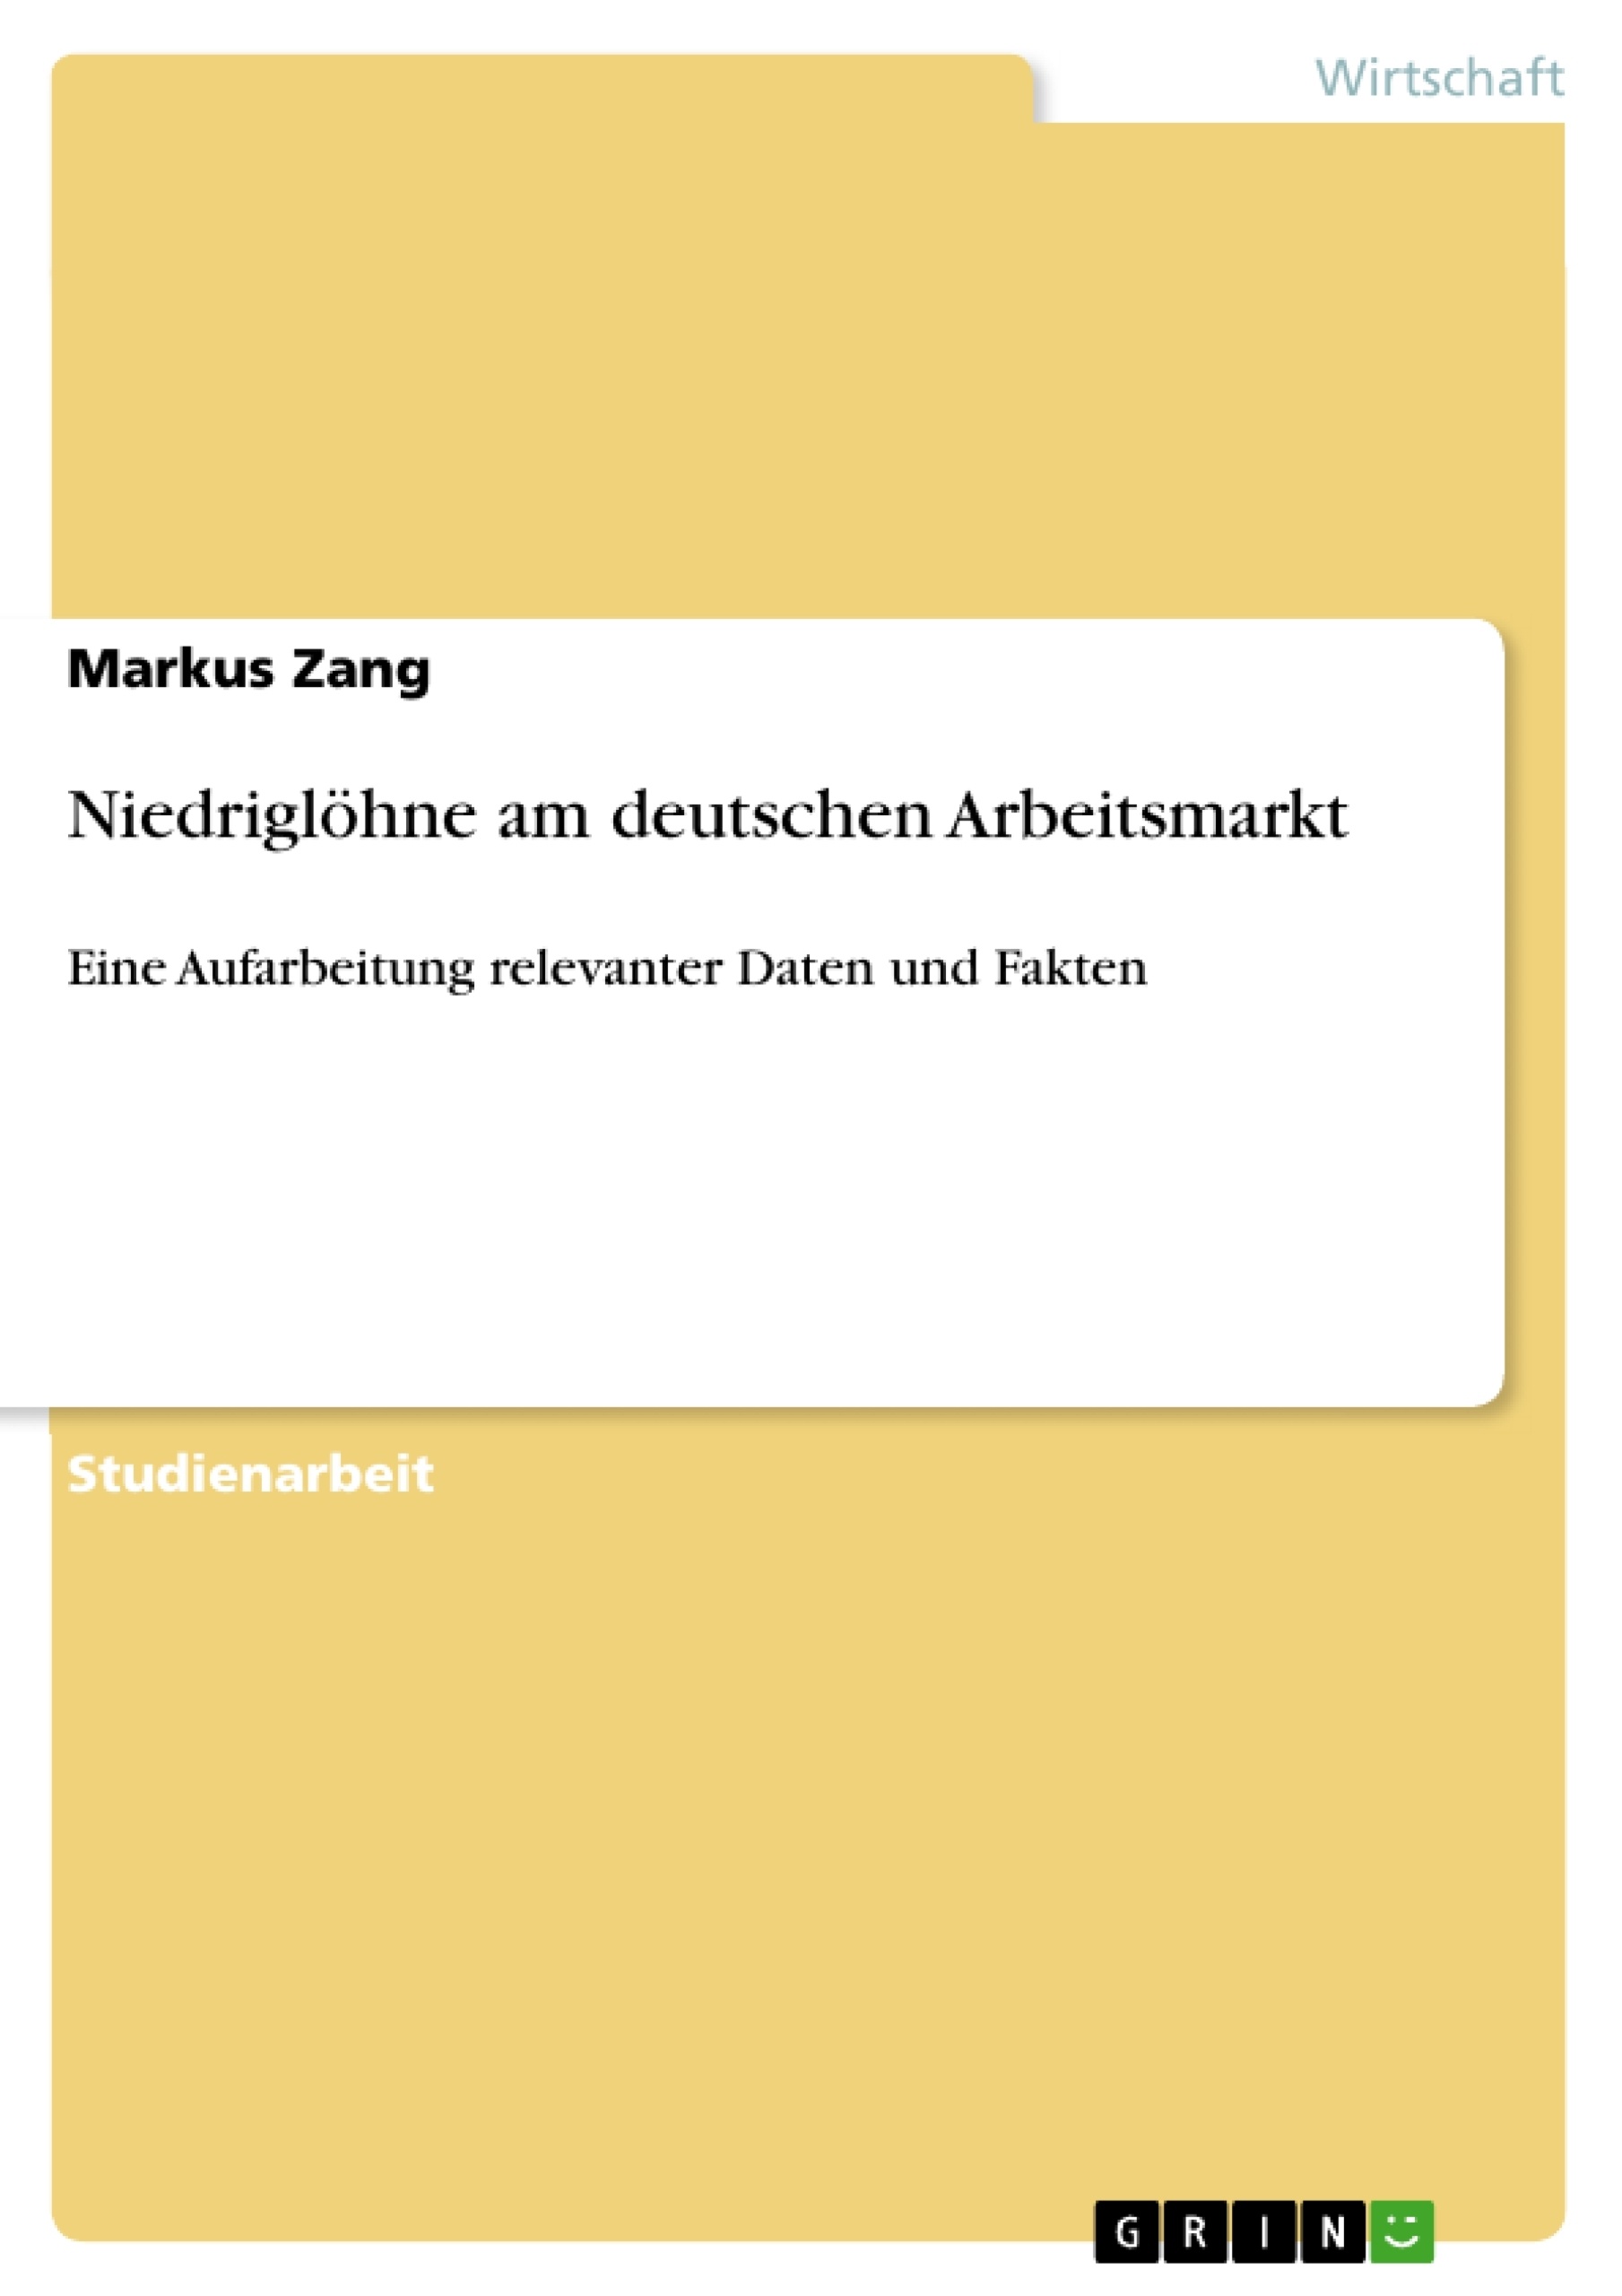 Title: Niedriglöhne am deutschen Arbeitsmarkt